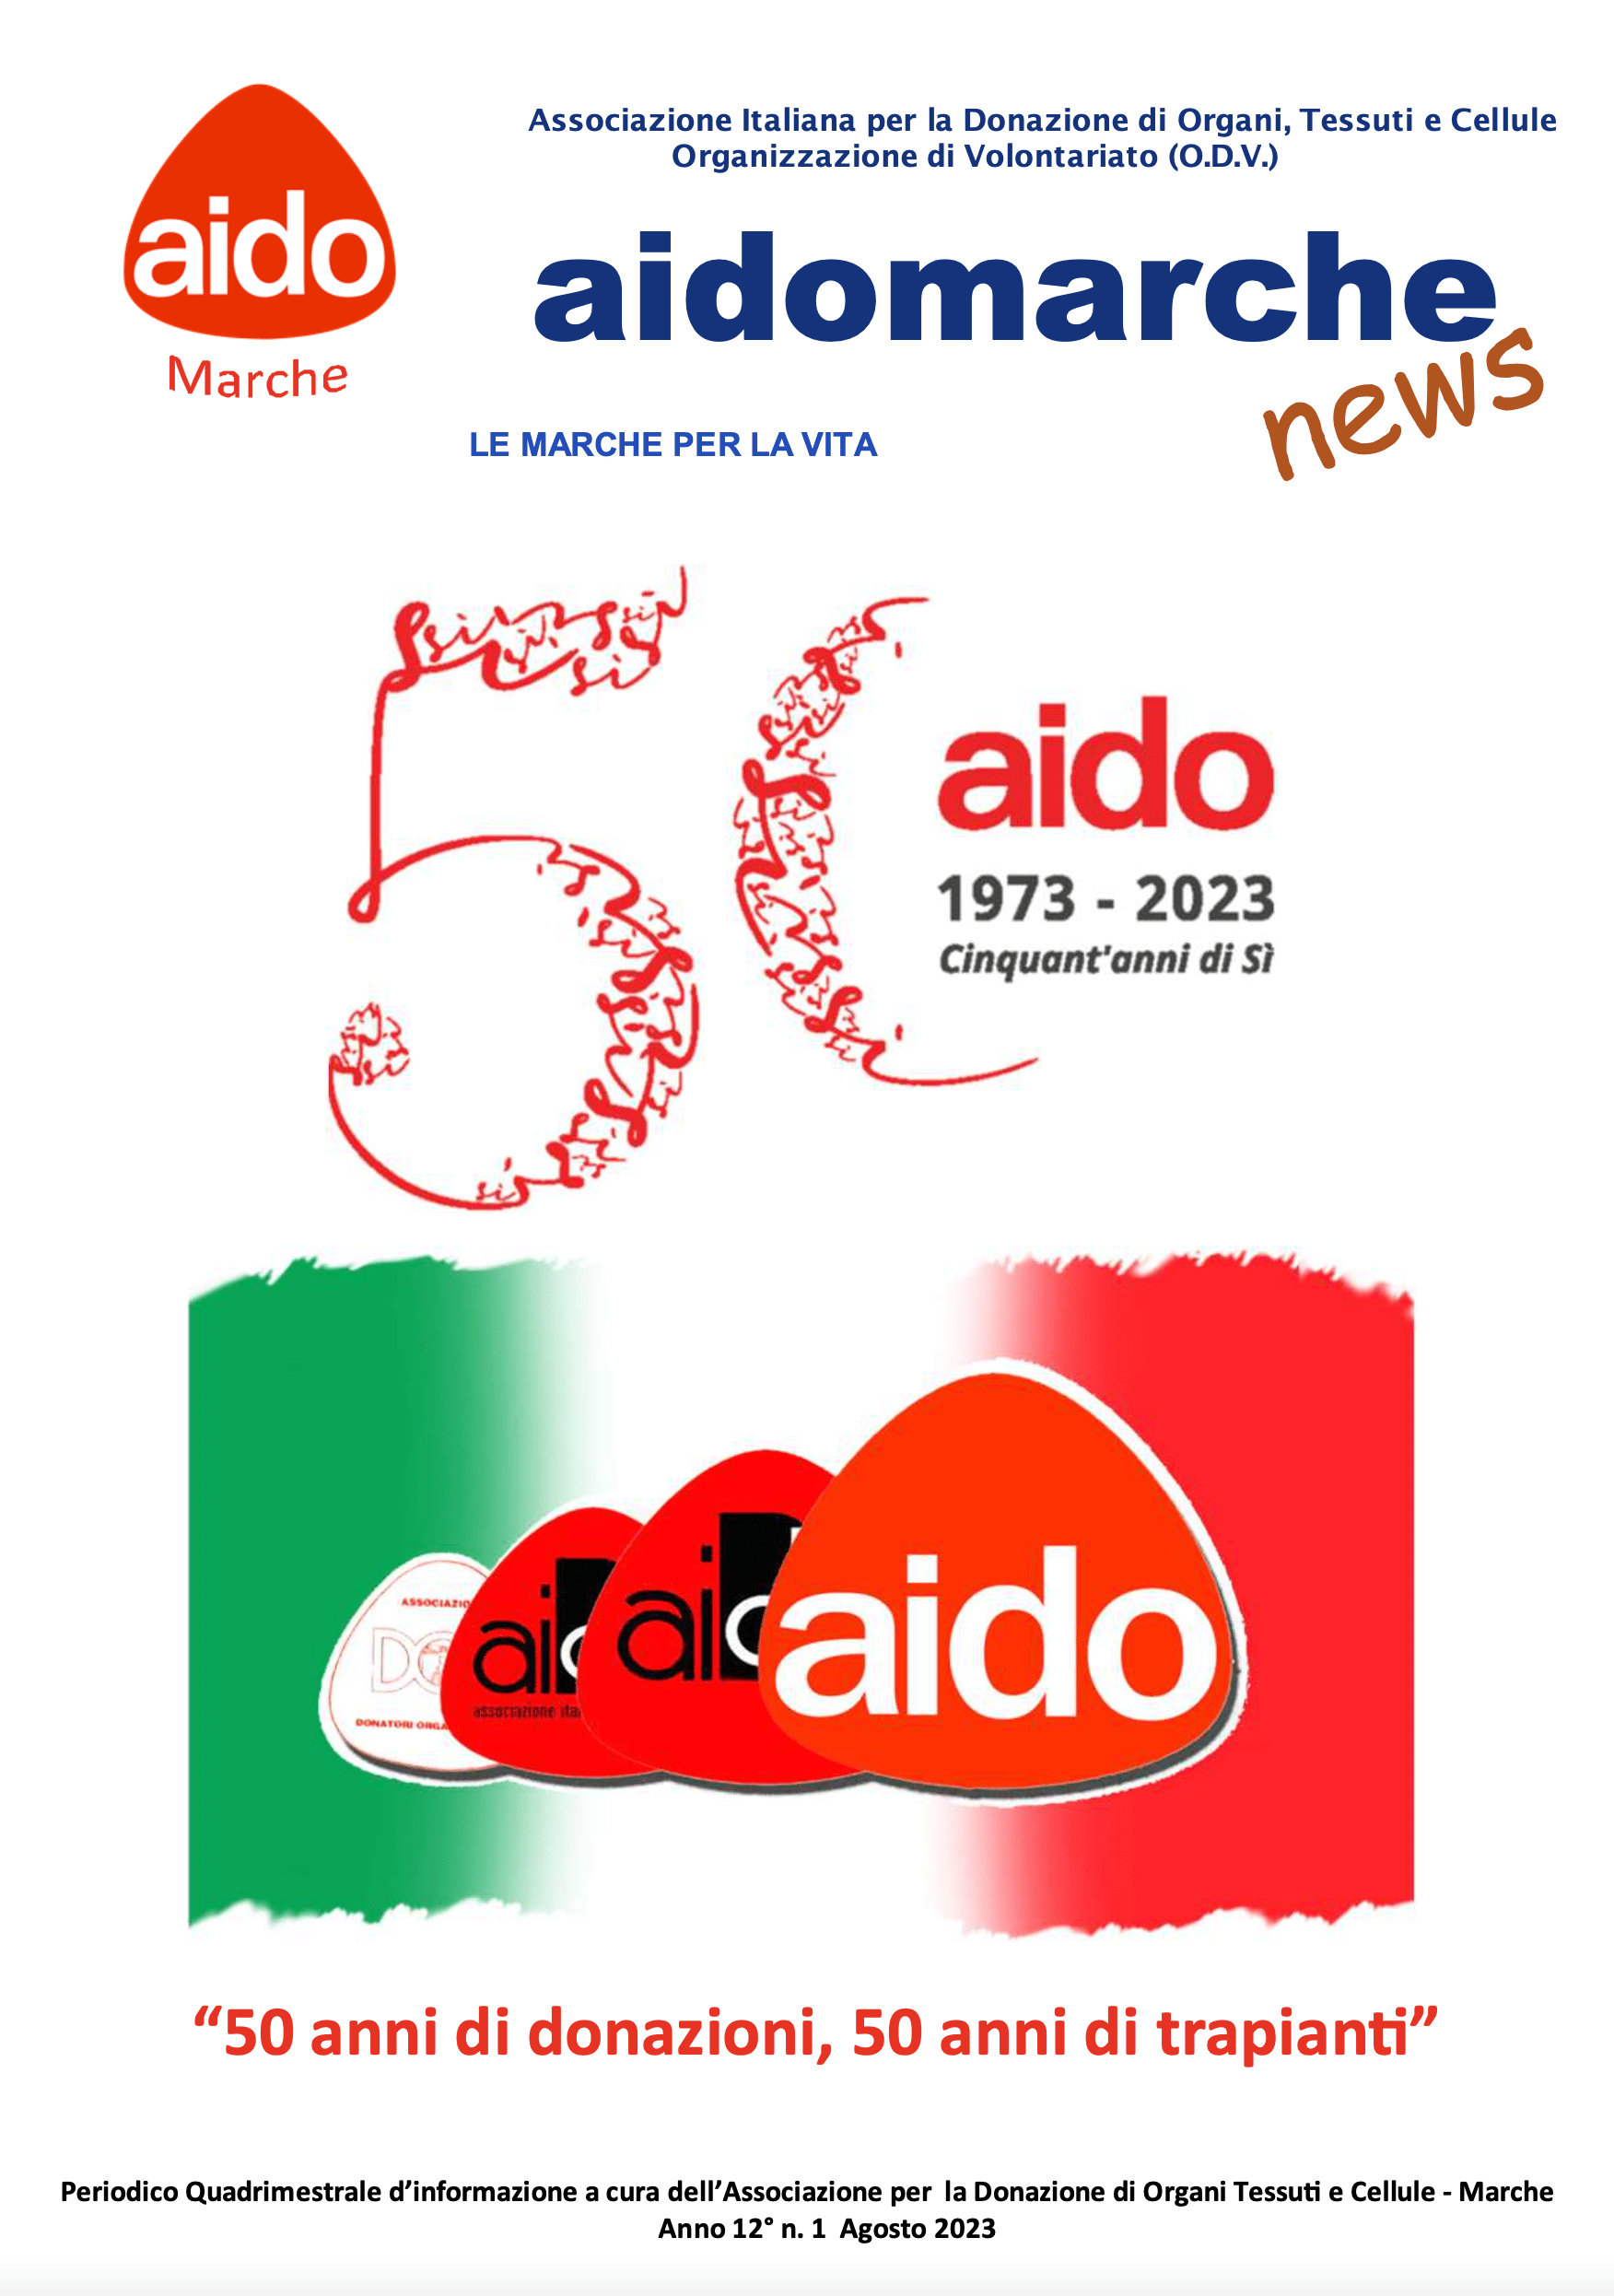 Al momento stai visualizzando Aido marche news n°1-2023